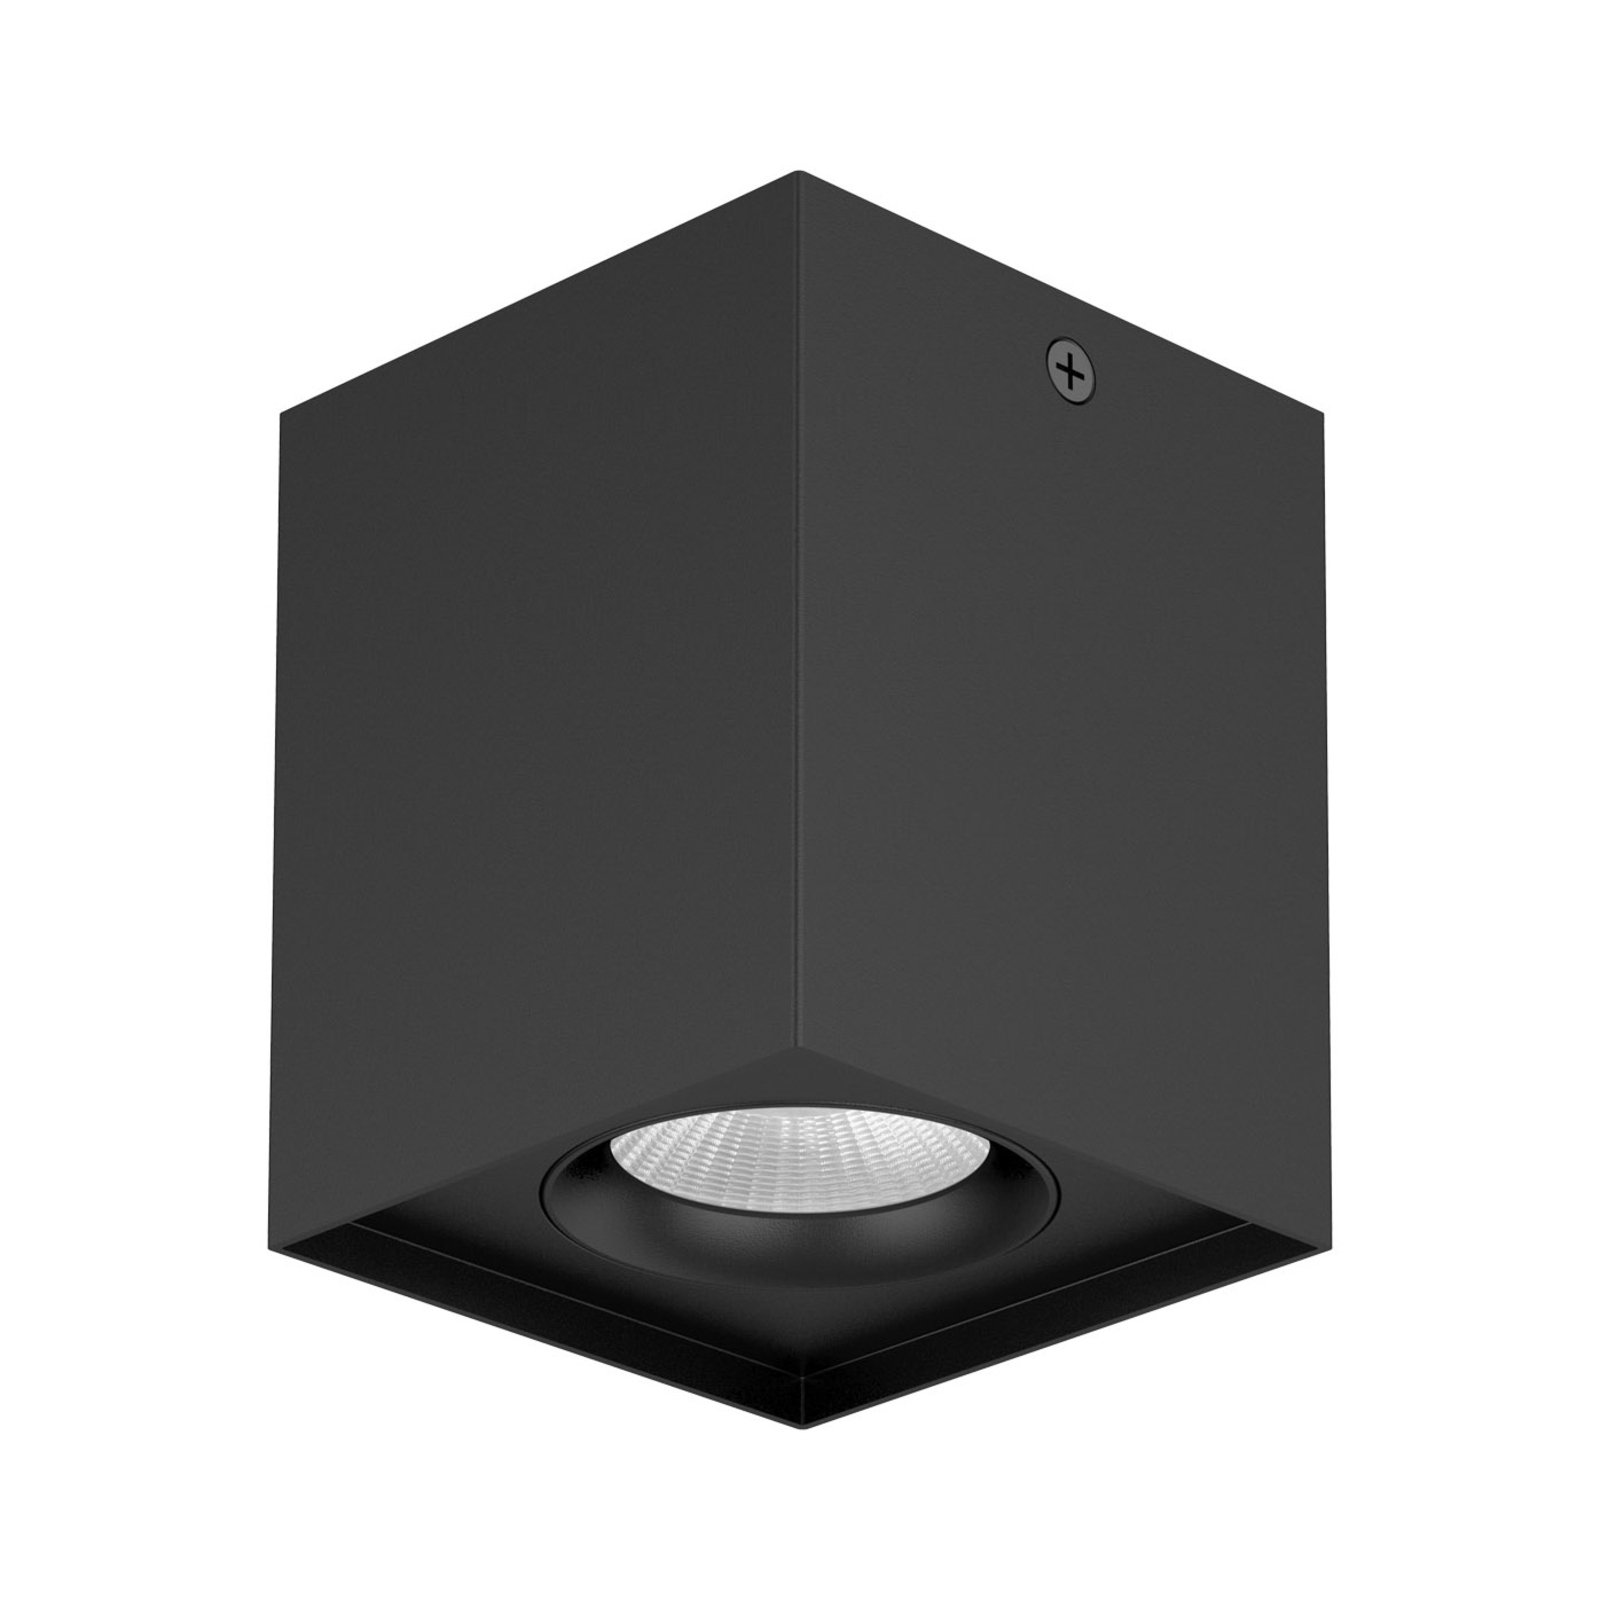 EVN Kardanus plafonnier LED, 9x9 cm, noir